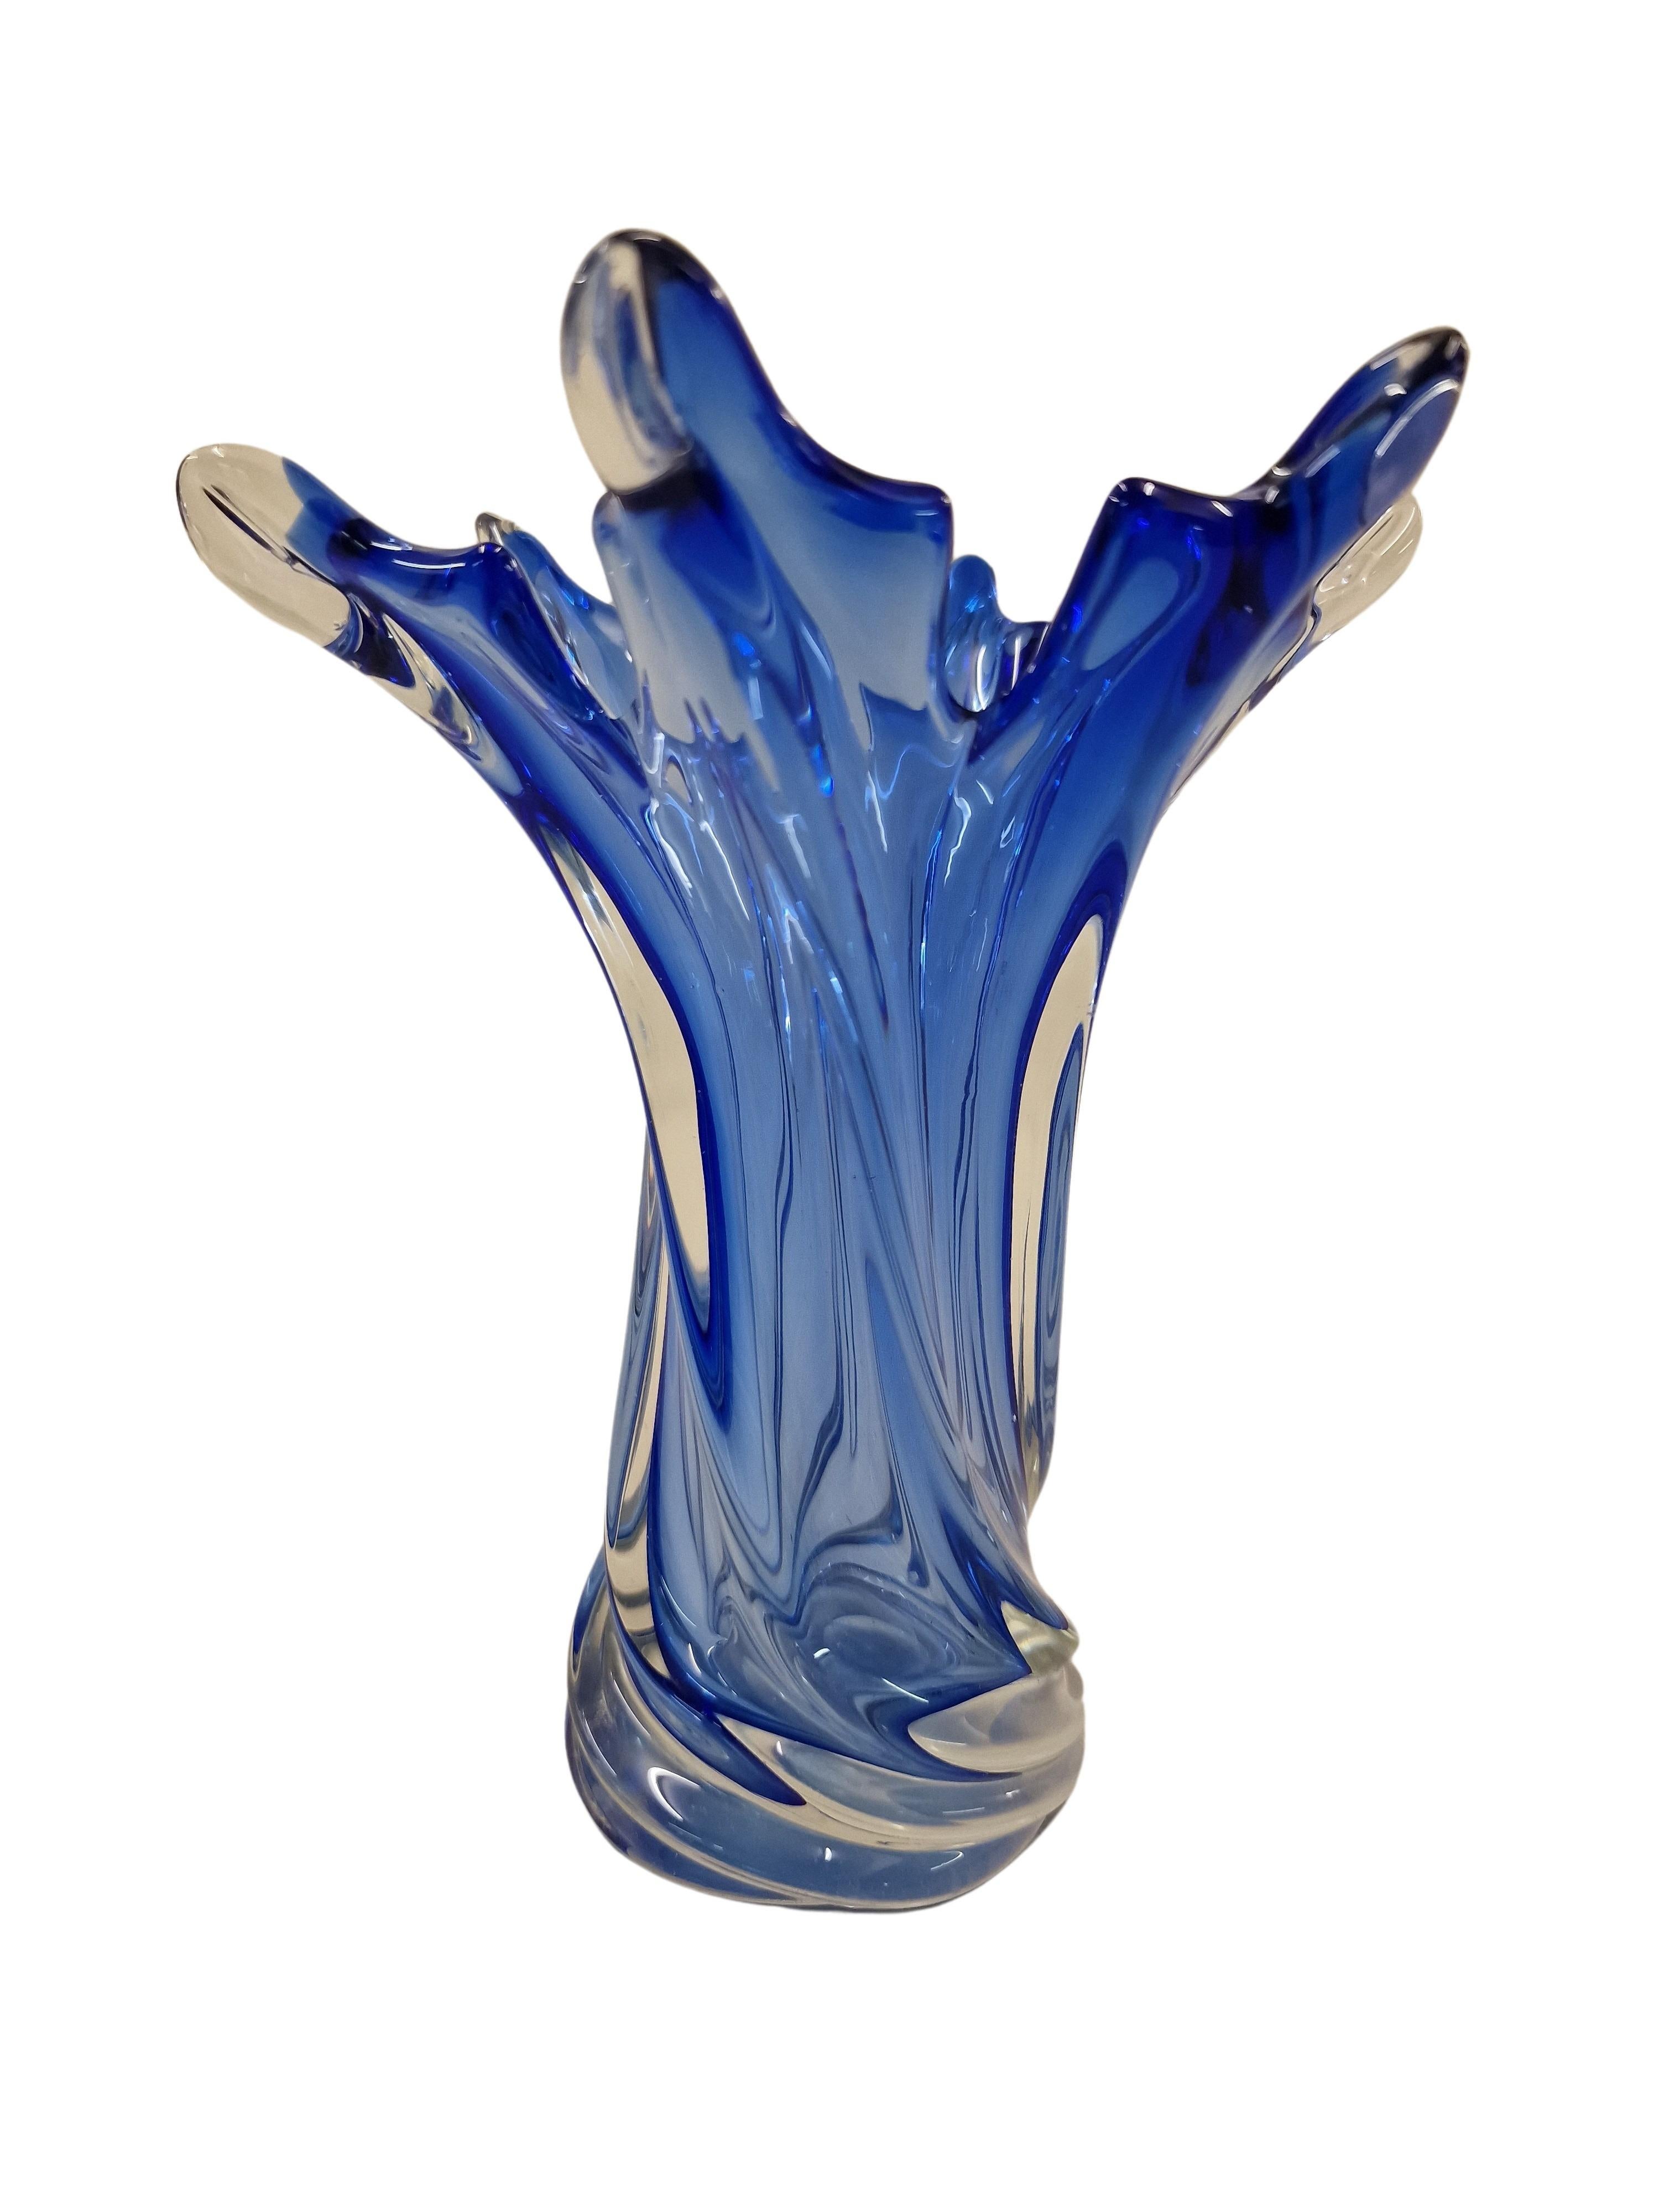 Vase à fleurs en forme d'étoile très décoratif dans une belle couleur bleue, fabriqué dans le célèbre centre de verre d'art, verre soufflé à la bouche, Murano, Venise, Italie, réalisé dans les années 1970. 

Le vase a une forme magnifique - il est